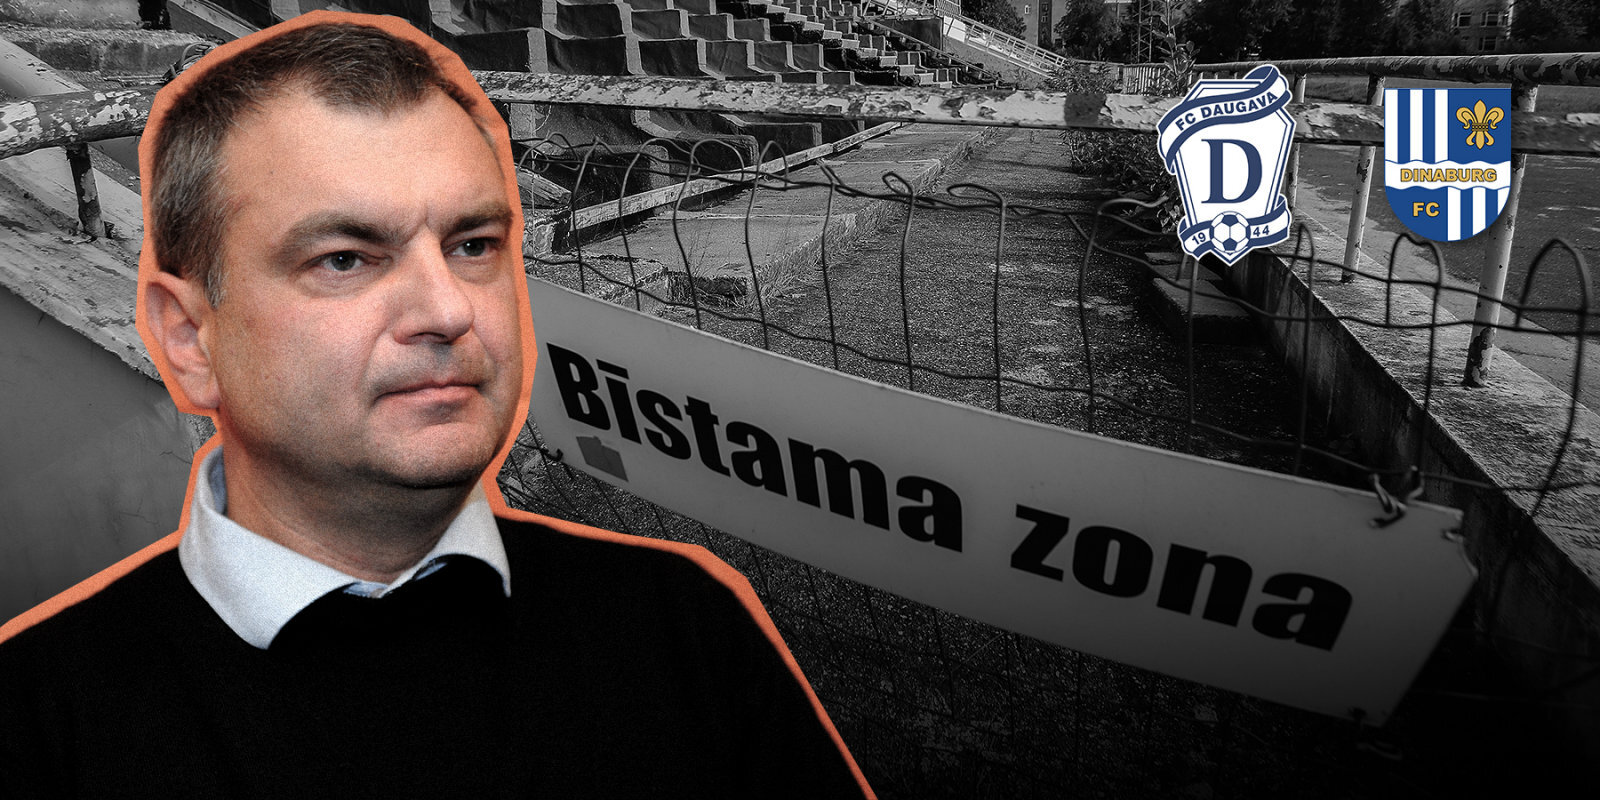 Oļegs Gavrilovs. Melu detektori, ieguldītie miljoni un pazudusī 'EURO 2004' nauda